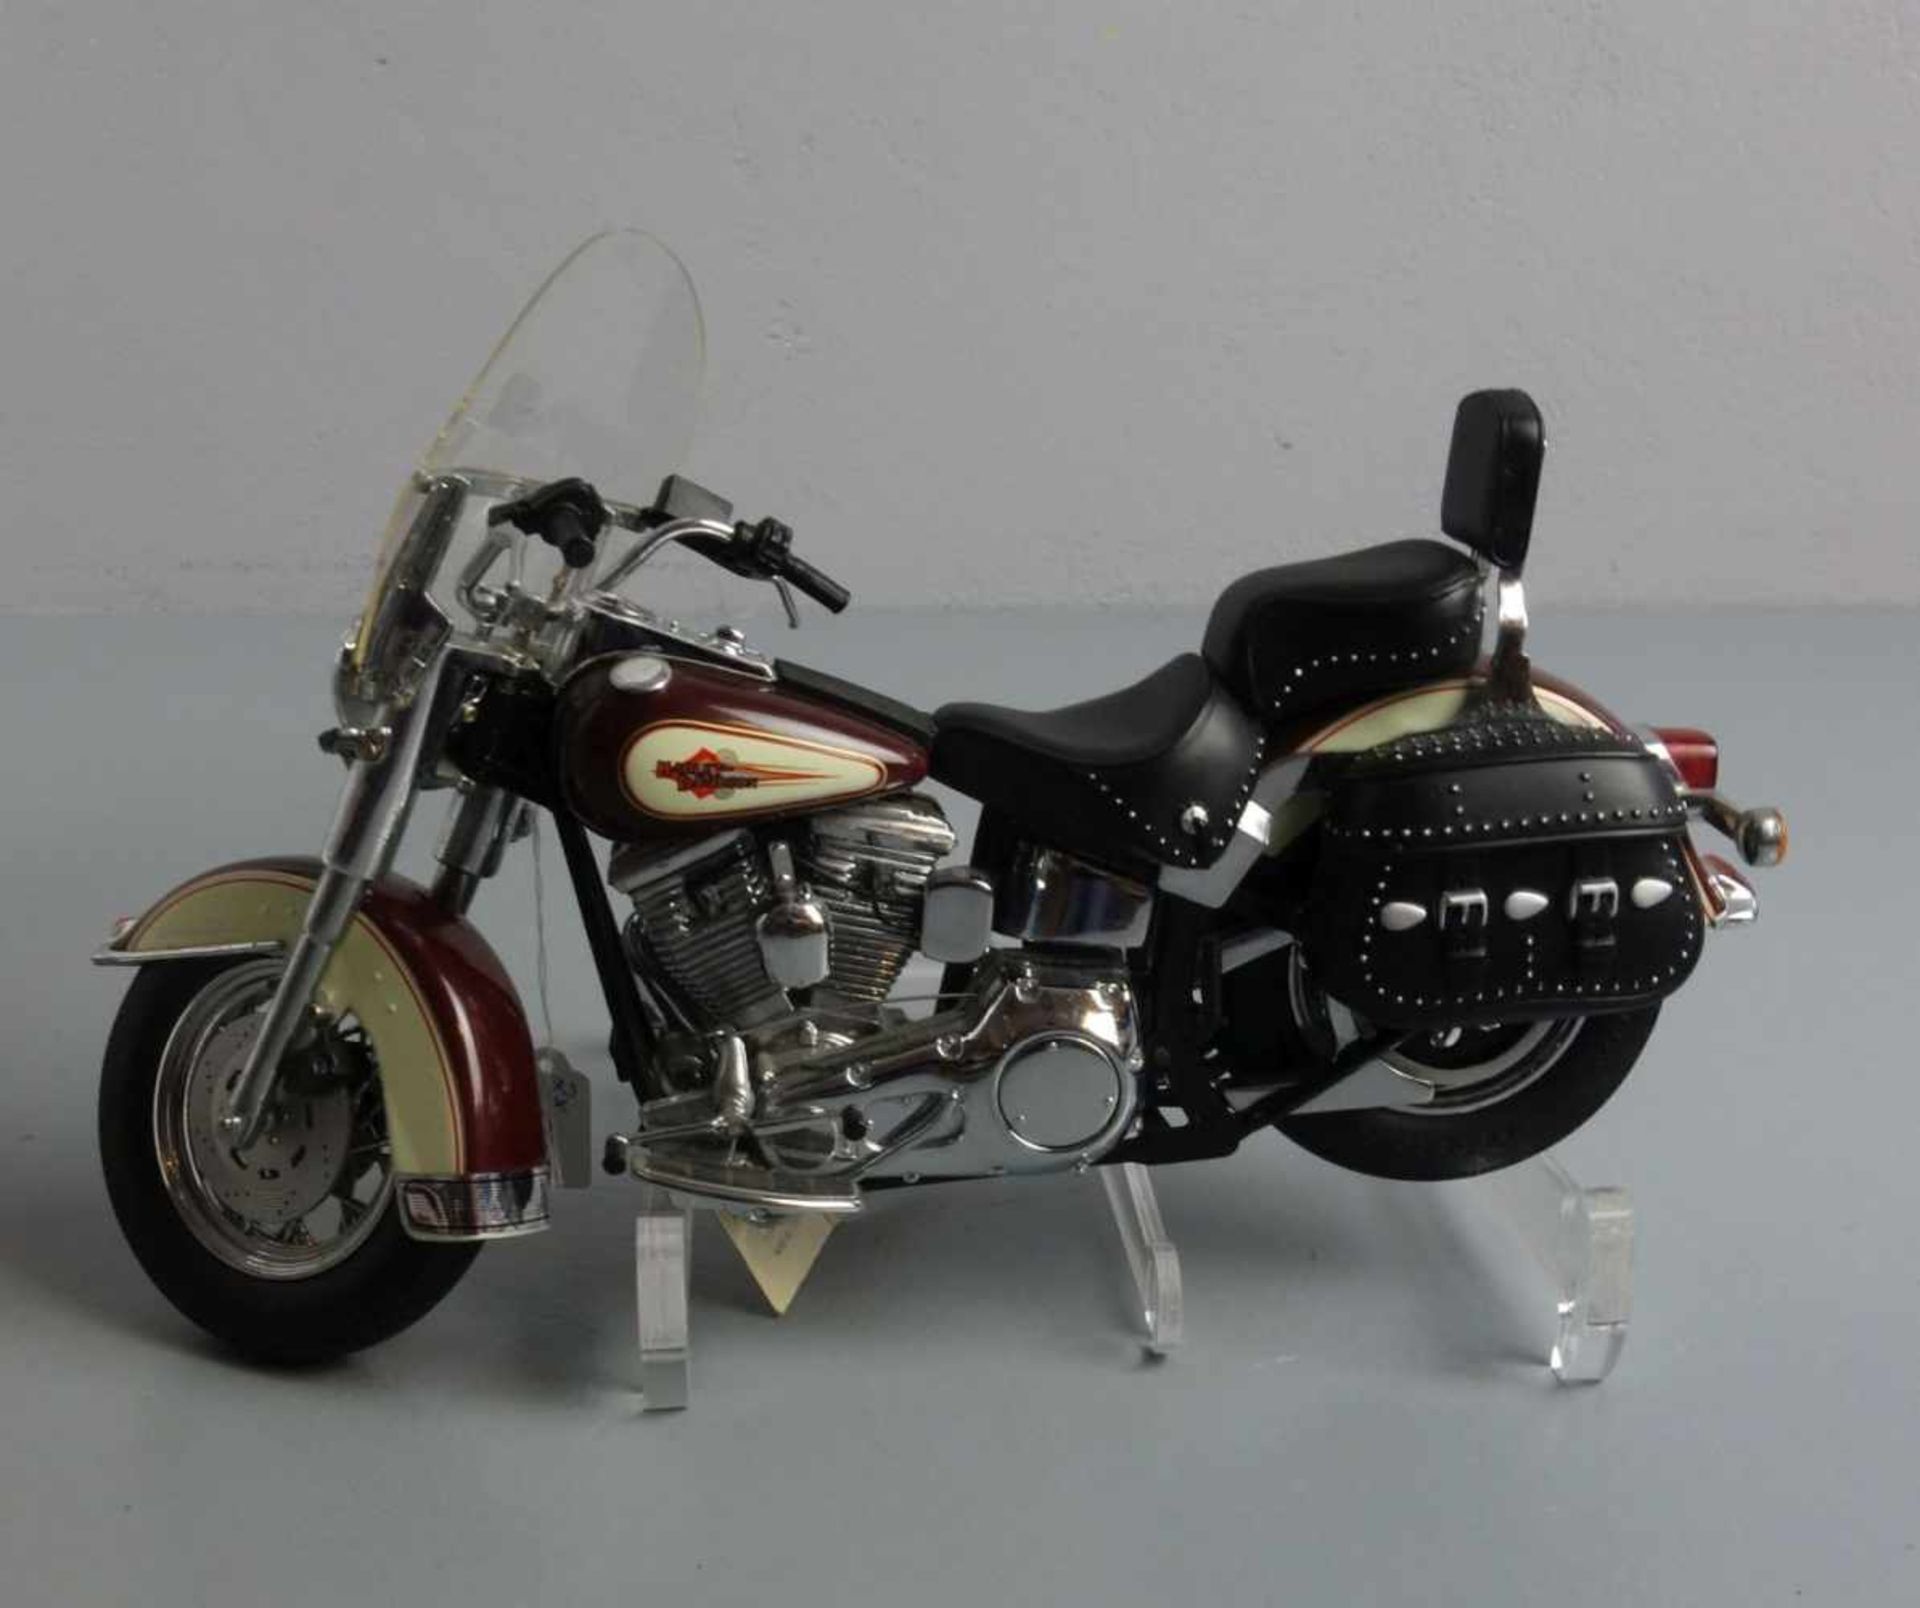 HARLEY DAVIDSON - MOTORRAD - MODELL: Franklin Mint Precision Models "Harley Davidson Heritage - Image 3 of 4